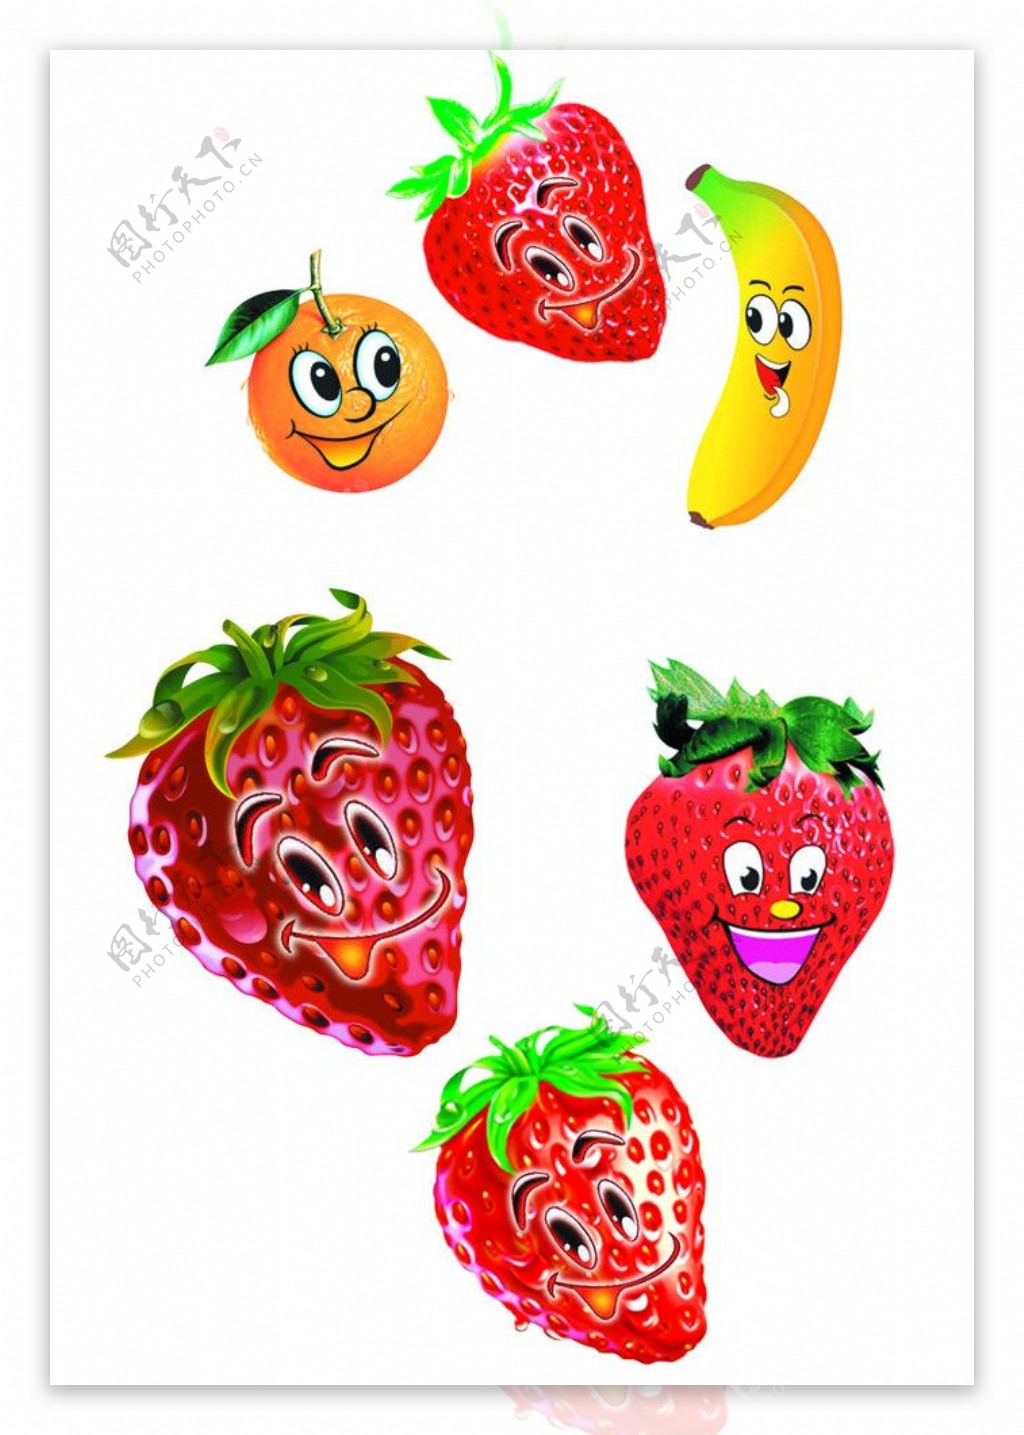 水果图片